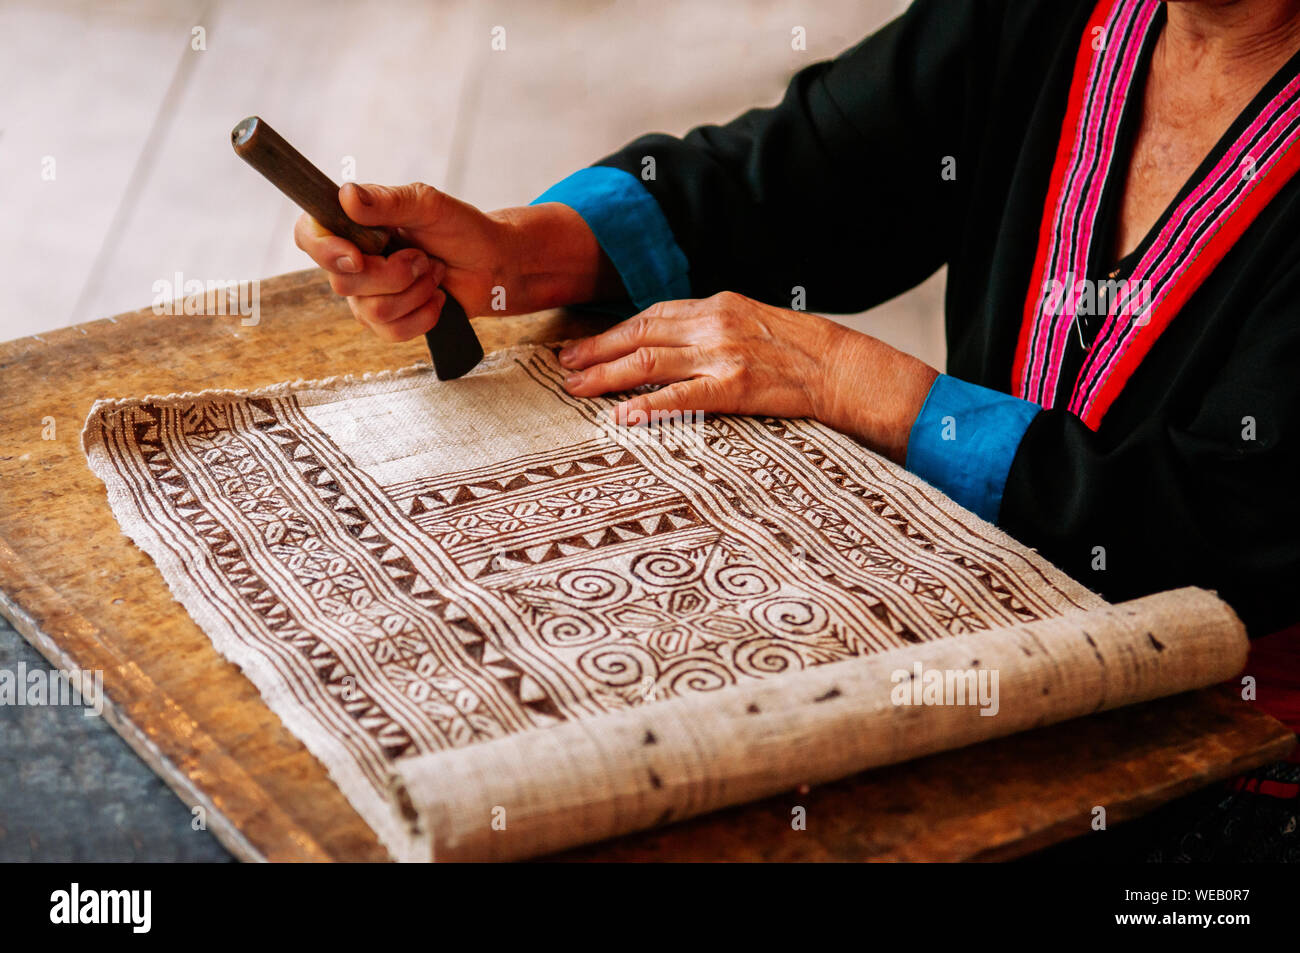 Luang Prabang, Laos - Laos Hilltribe femme travaillant sur peinture sur tissu Batik. Culture, tourisme à Ock Pop Tok centre d'artisanat Banque D'Images